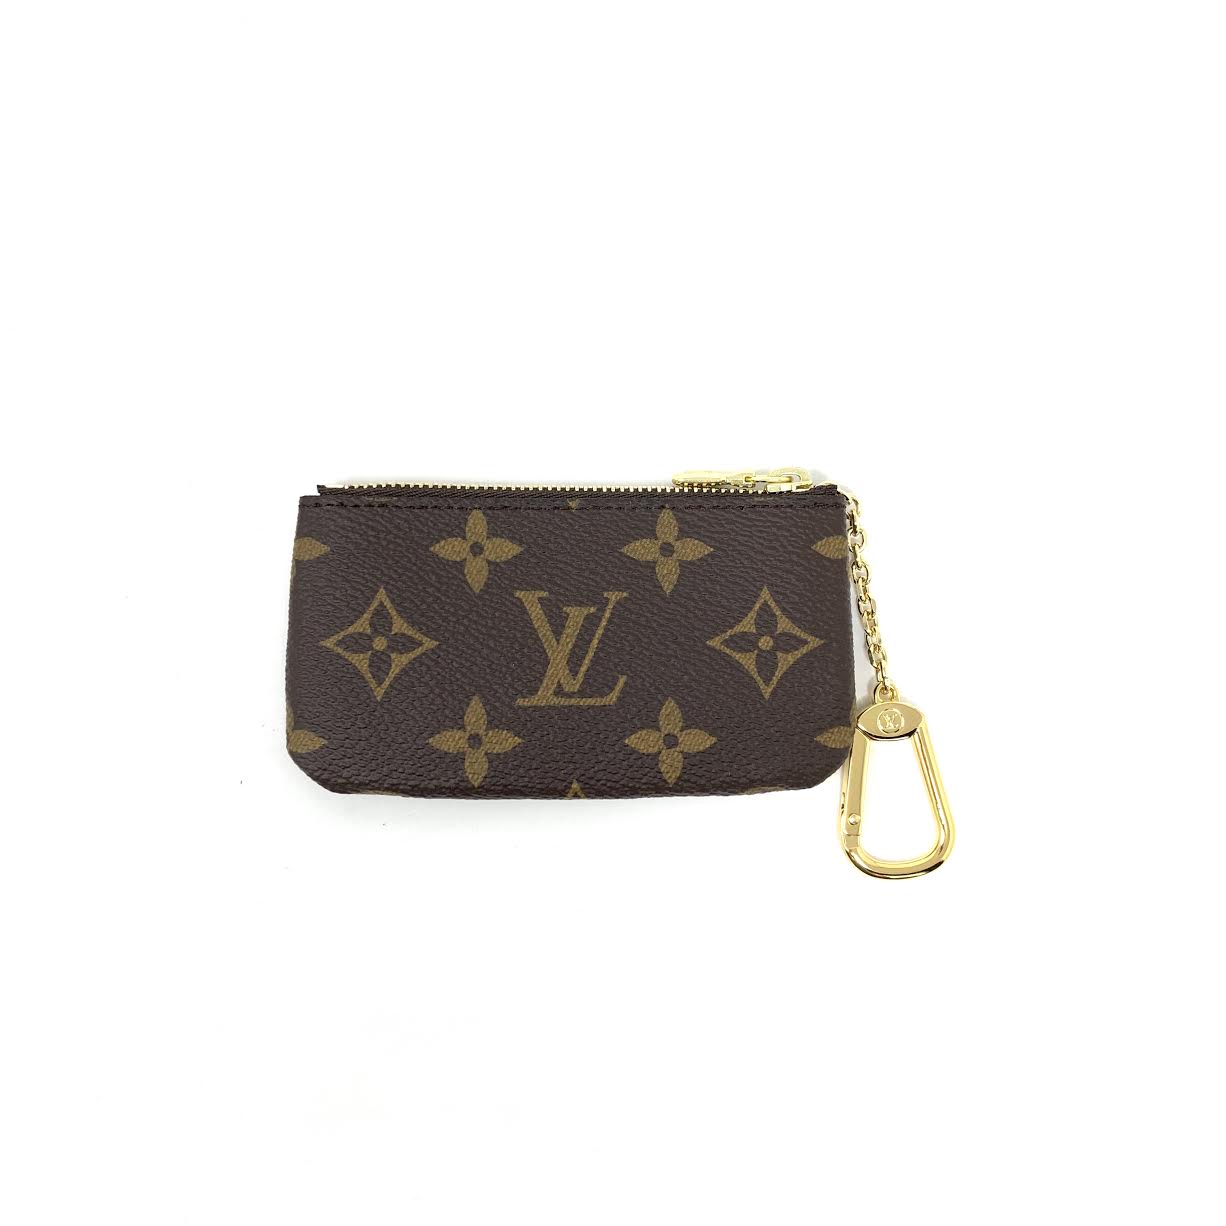 Louis Vuitton Key Pouch